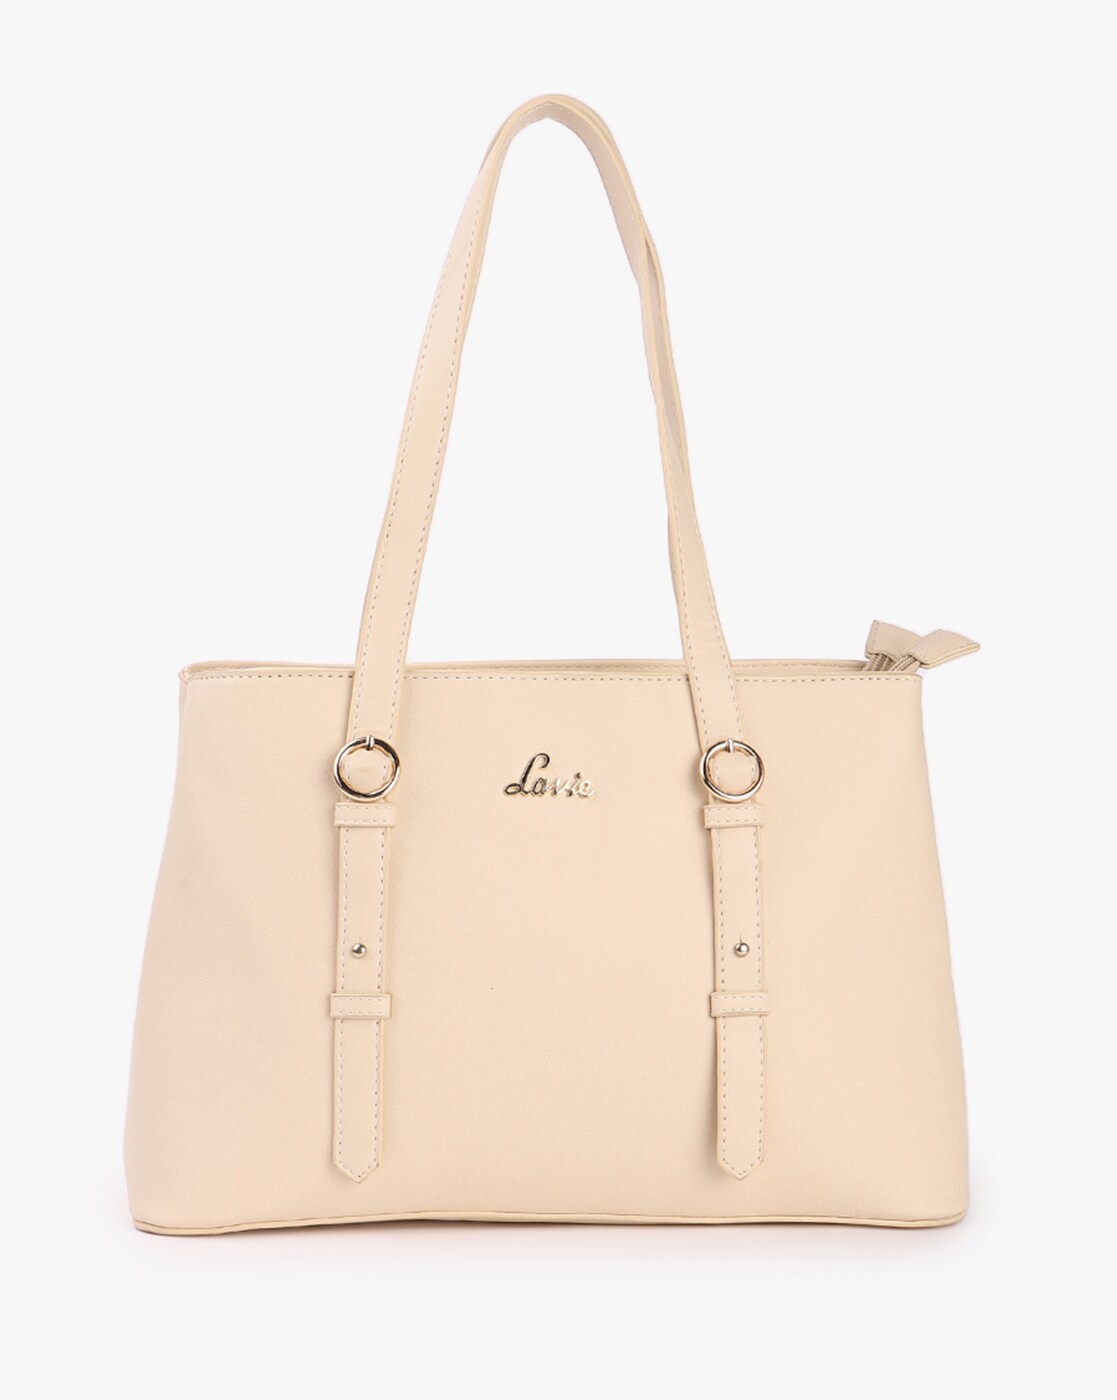 Buy LAVIE KALEY LG TOTE BAG Grey Handbags Online at Best Prices in India -  JioMart.